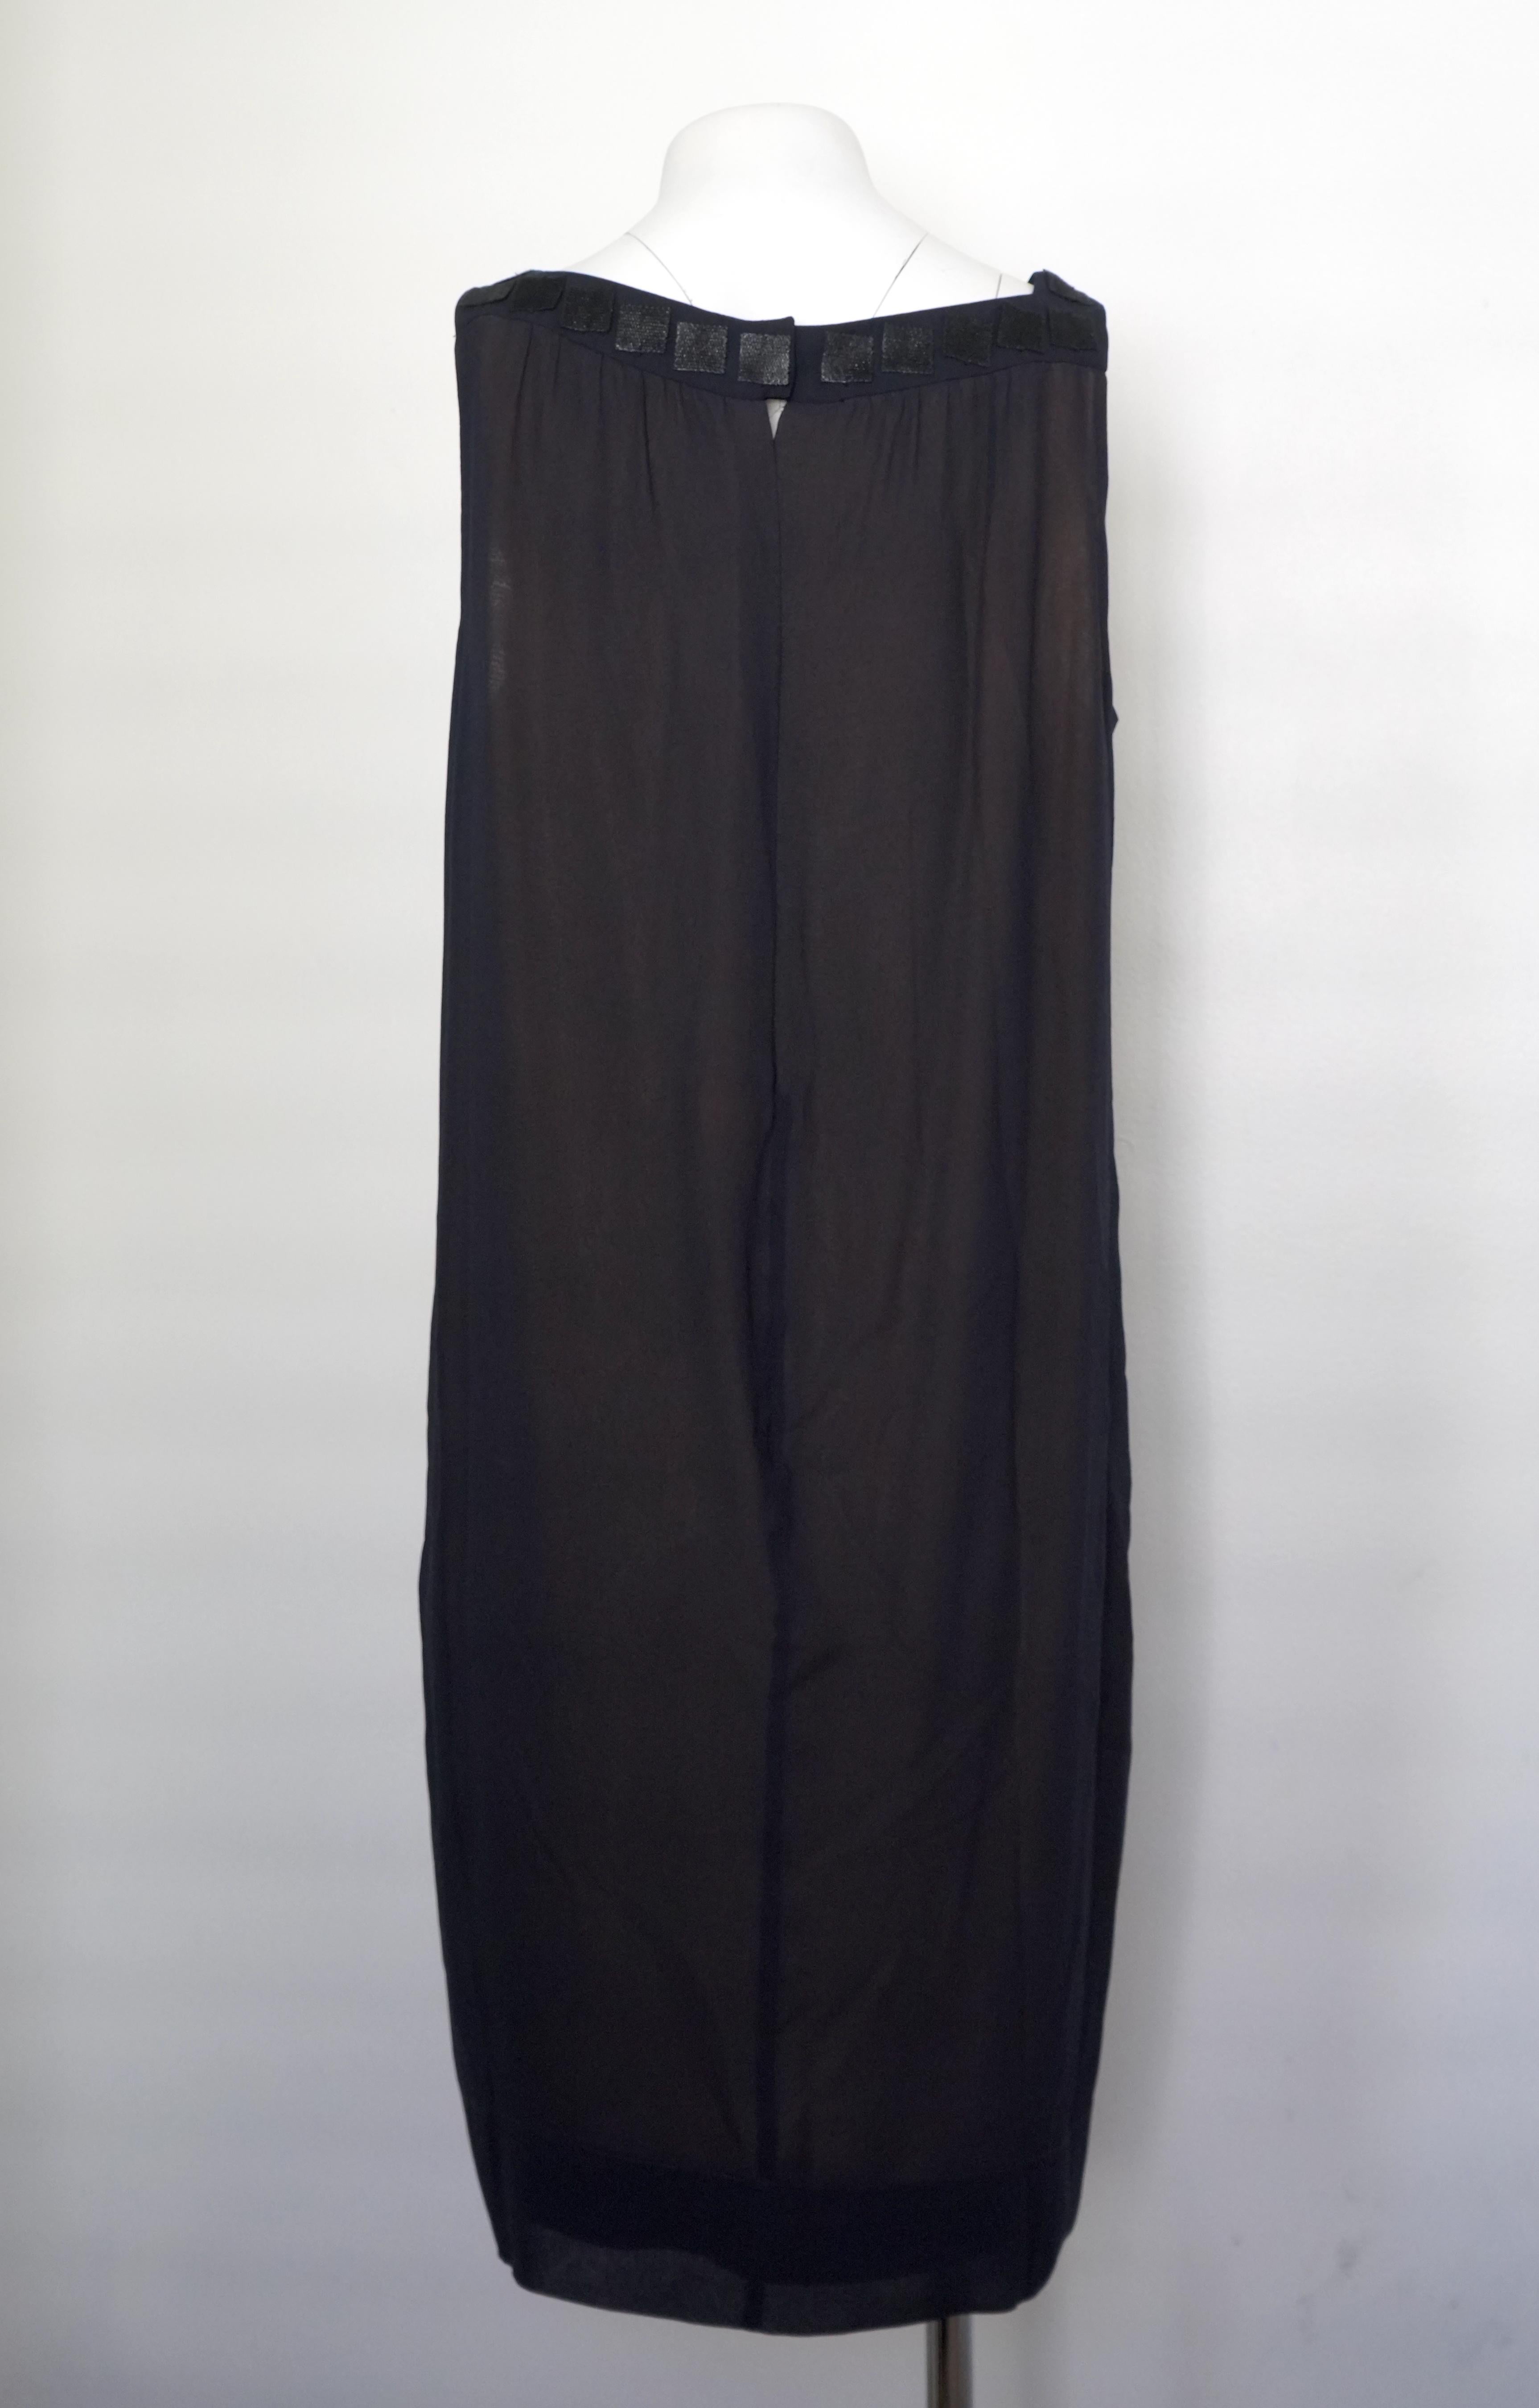 Cette robe midi sans manches d'Akris est un basique polyvalent et élégant de la garde-robe. Confectionné dans une luxueuse soie à 100 %, il se drape magnifiquement dans une teinte marine classique, complétée par une sous-couche subtilement nude. Les